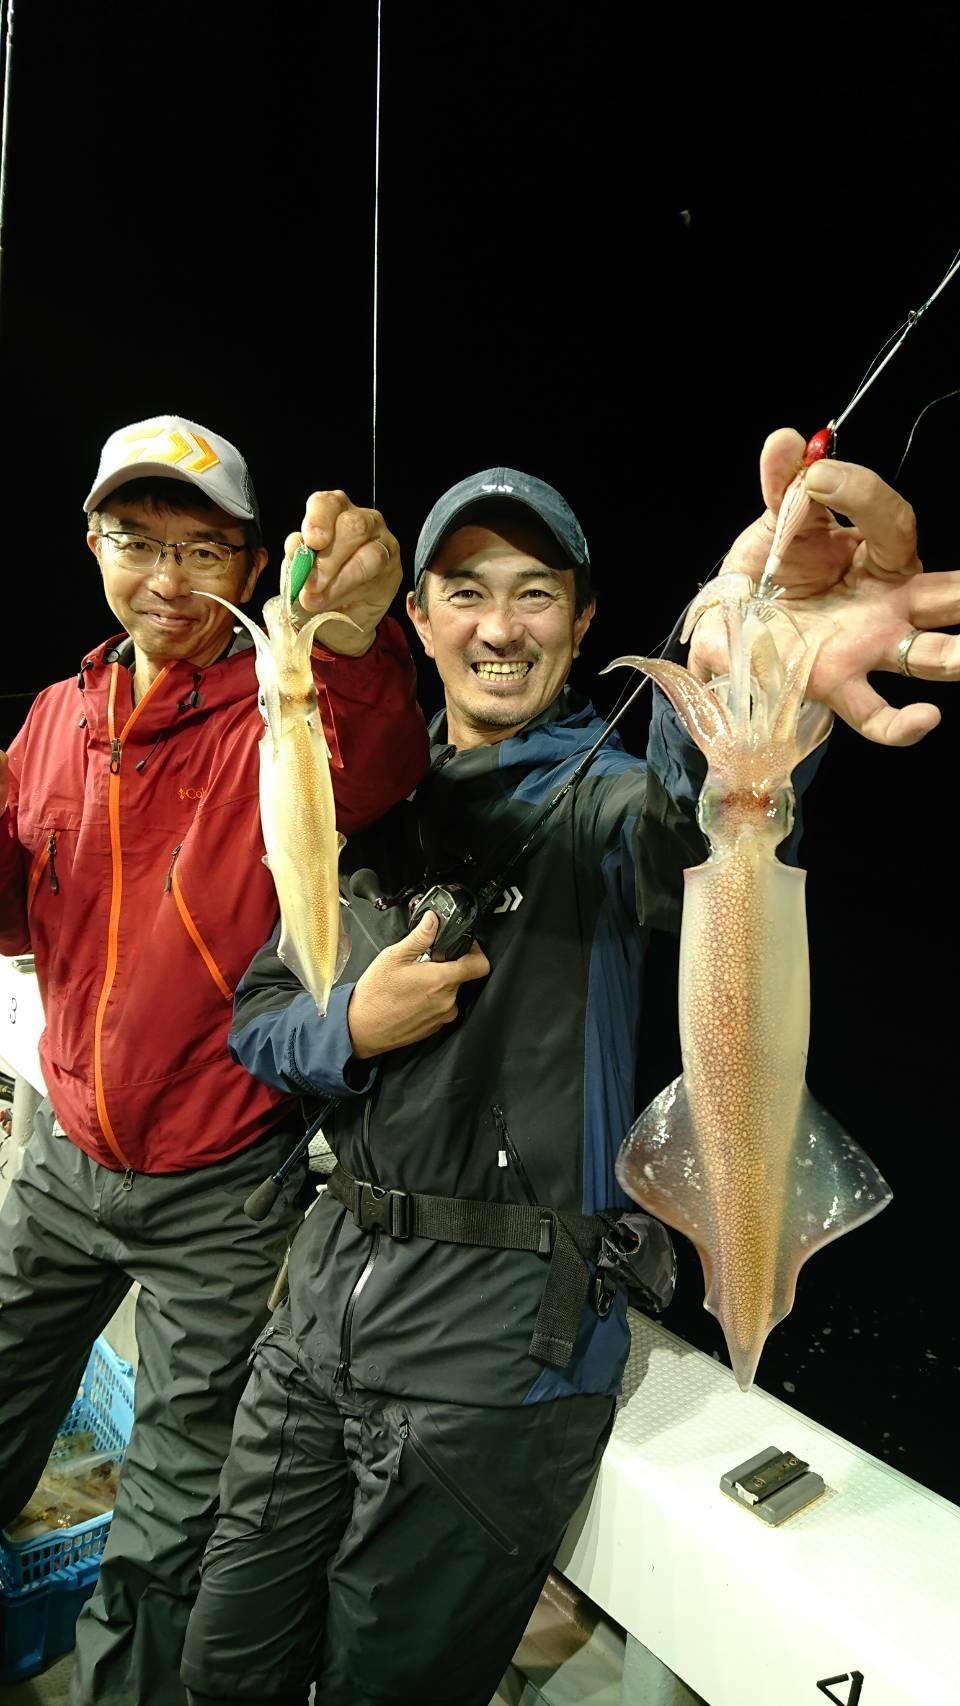 イカメタルのマイカはカワハギ釣りに似てる 釣具のイシグロ 釣り情報サイト